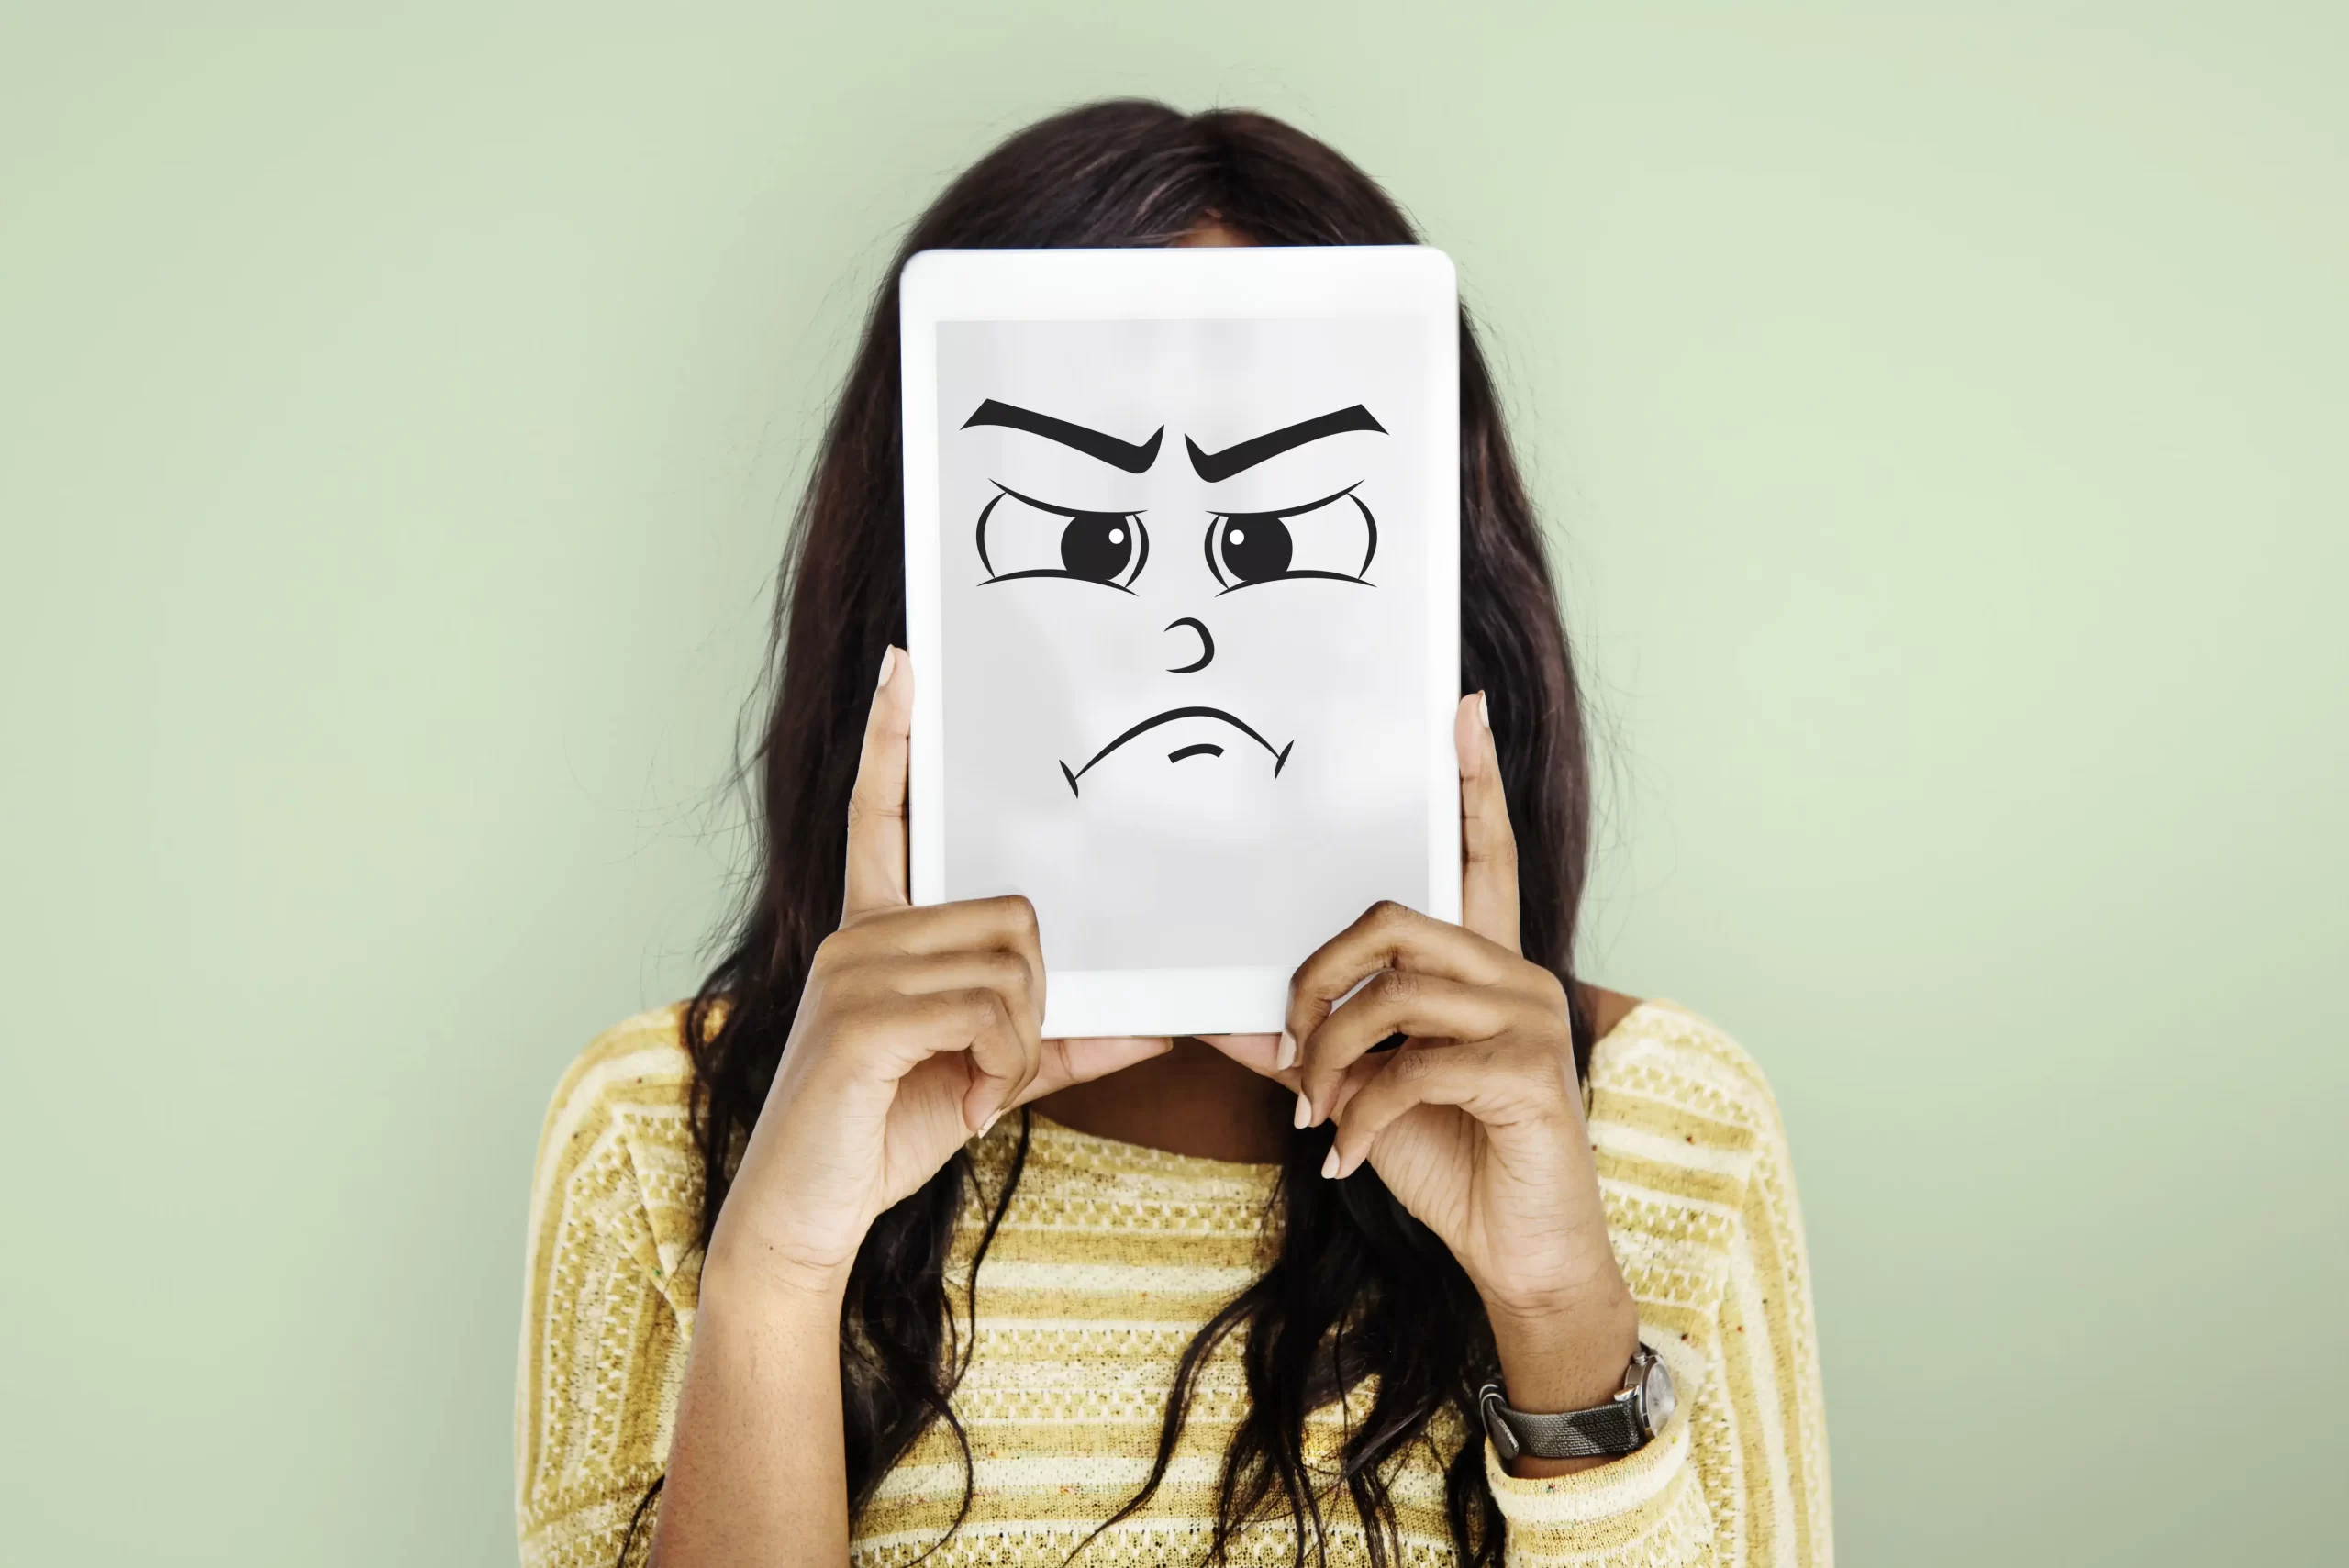 در این عکس، یک زن با تابلو سفیدی که بر روی ان صورت ناراحتی که شیده است در دست دارد که تابلو را جلوی صورت خود نگه داشته است